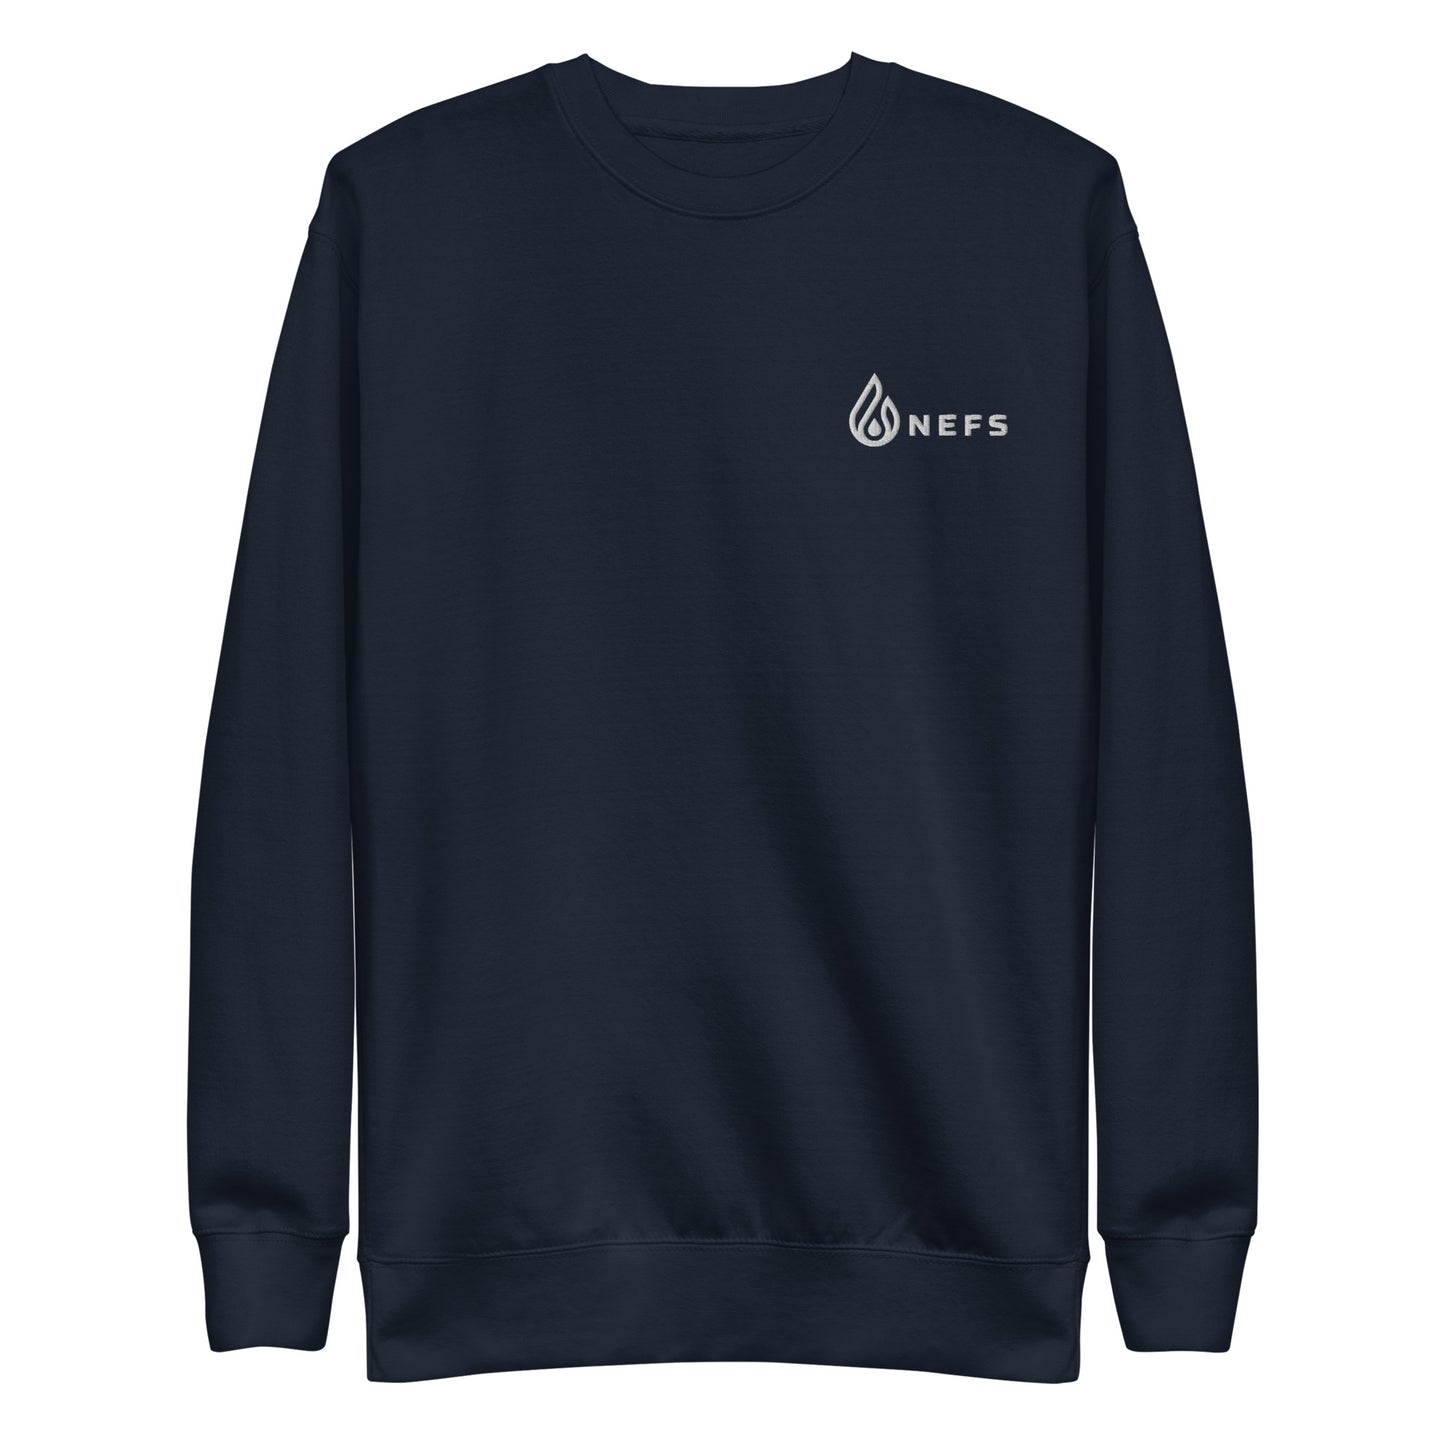 Unisex Premium Sweatshirt (fitted cut)